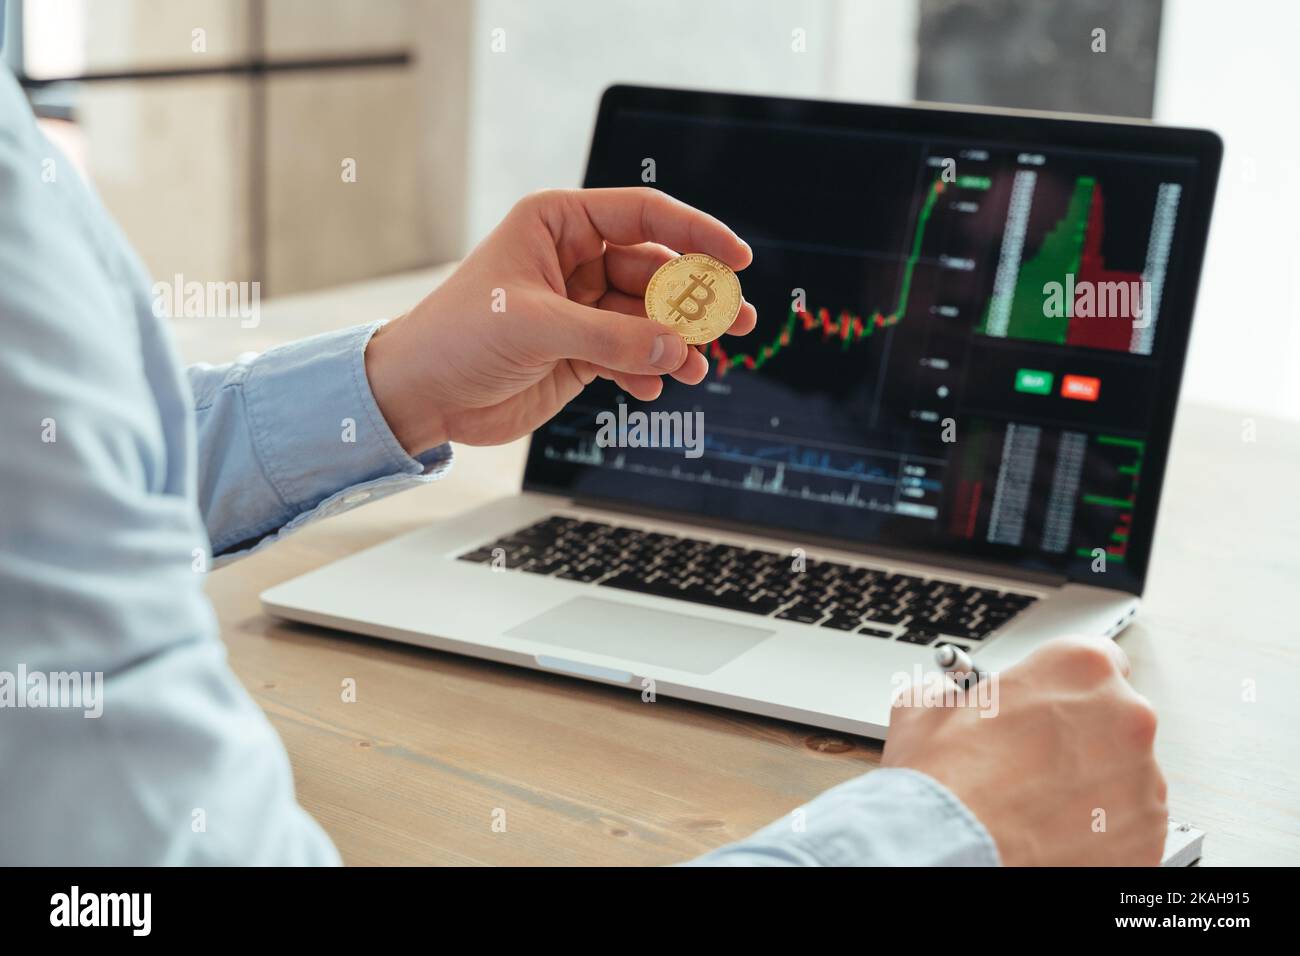 Gros plan sans visage d'un investisseur professionnel masculin détenant du bitcoin, utilisant un ordinateur portable avec un diagramme de la bourse de négociation, investissant dans la crypto-monnaie à son bureau. Investissement et technologie Banque D'Images